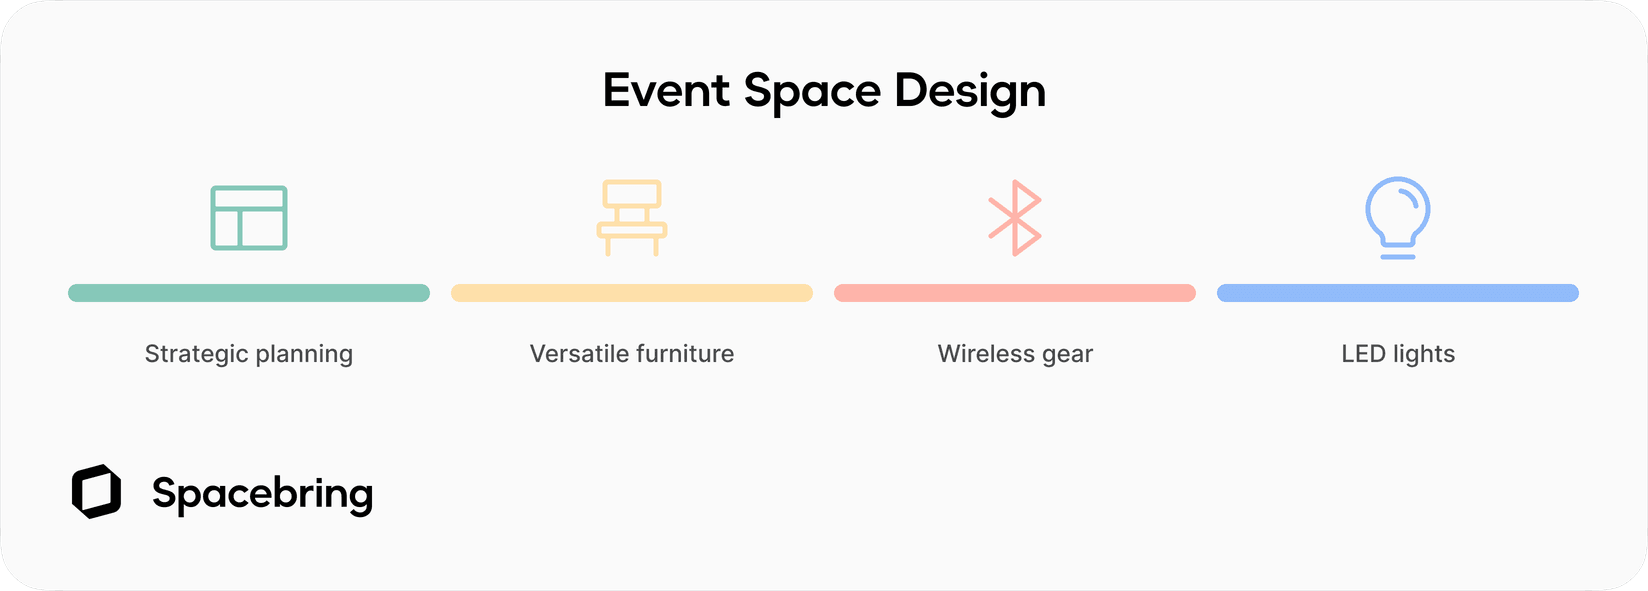 Event space design